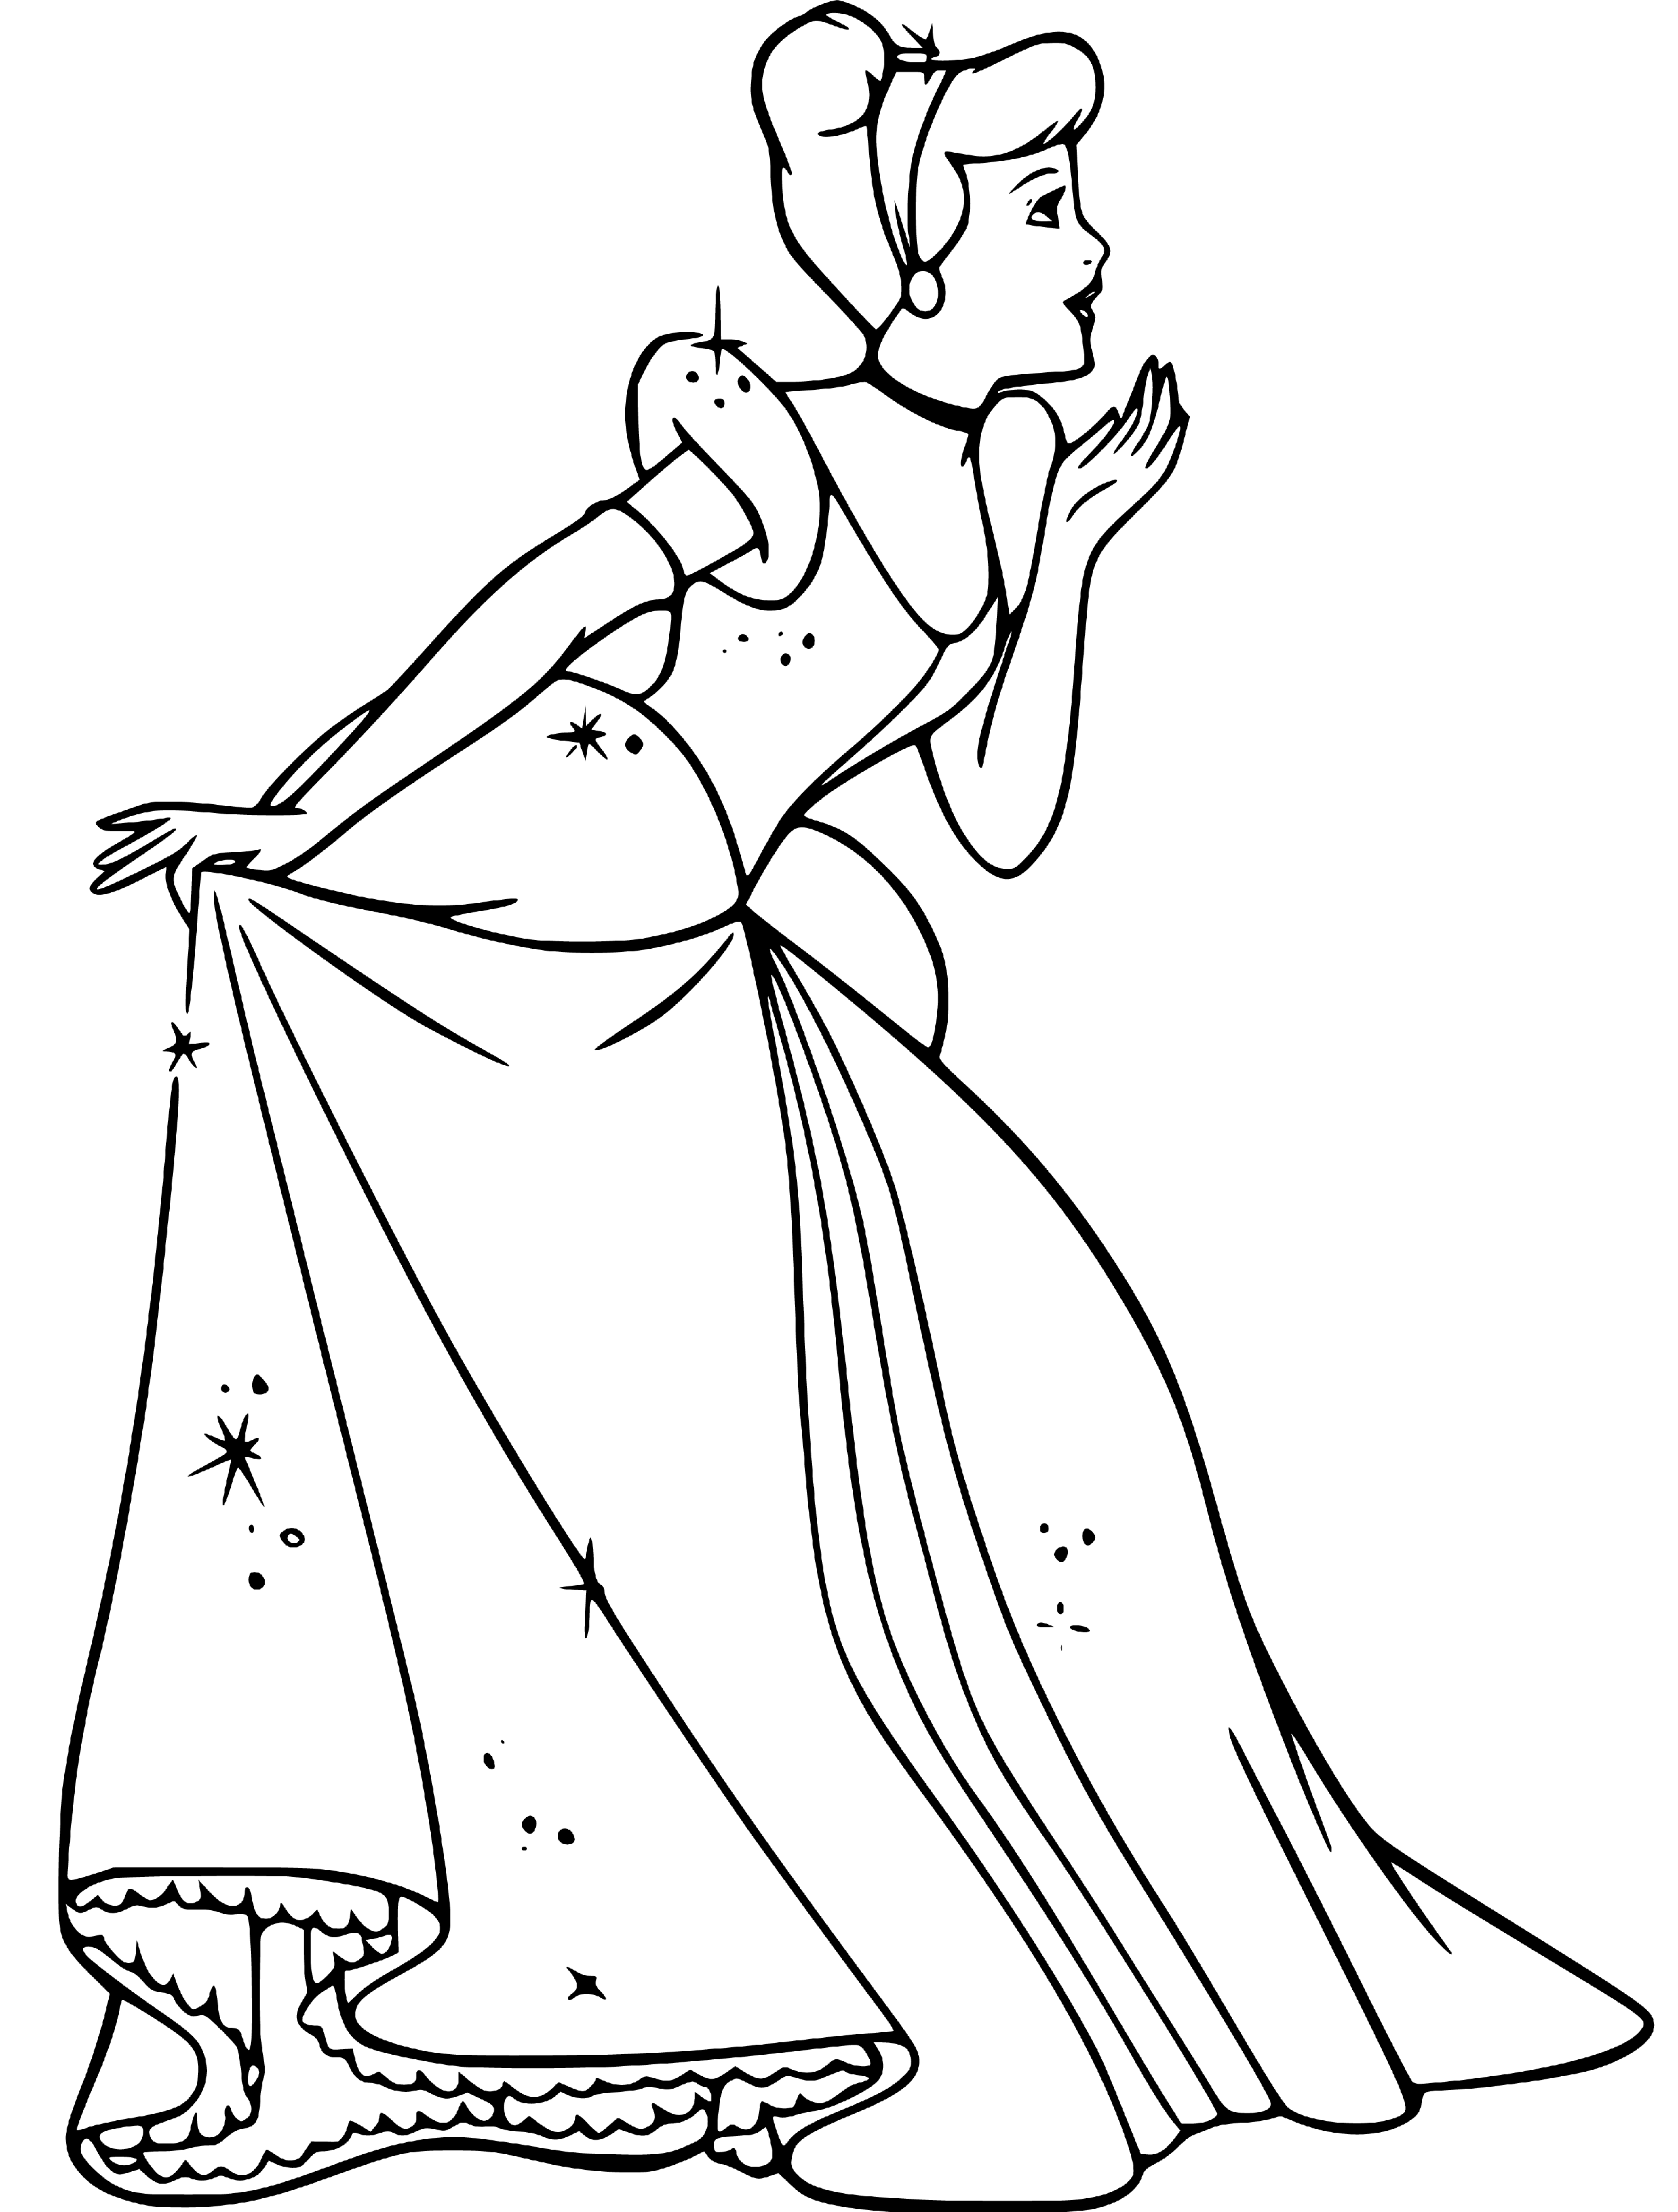 PrinceSS Cinderella Coloring Page - SheetalColor.com